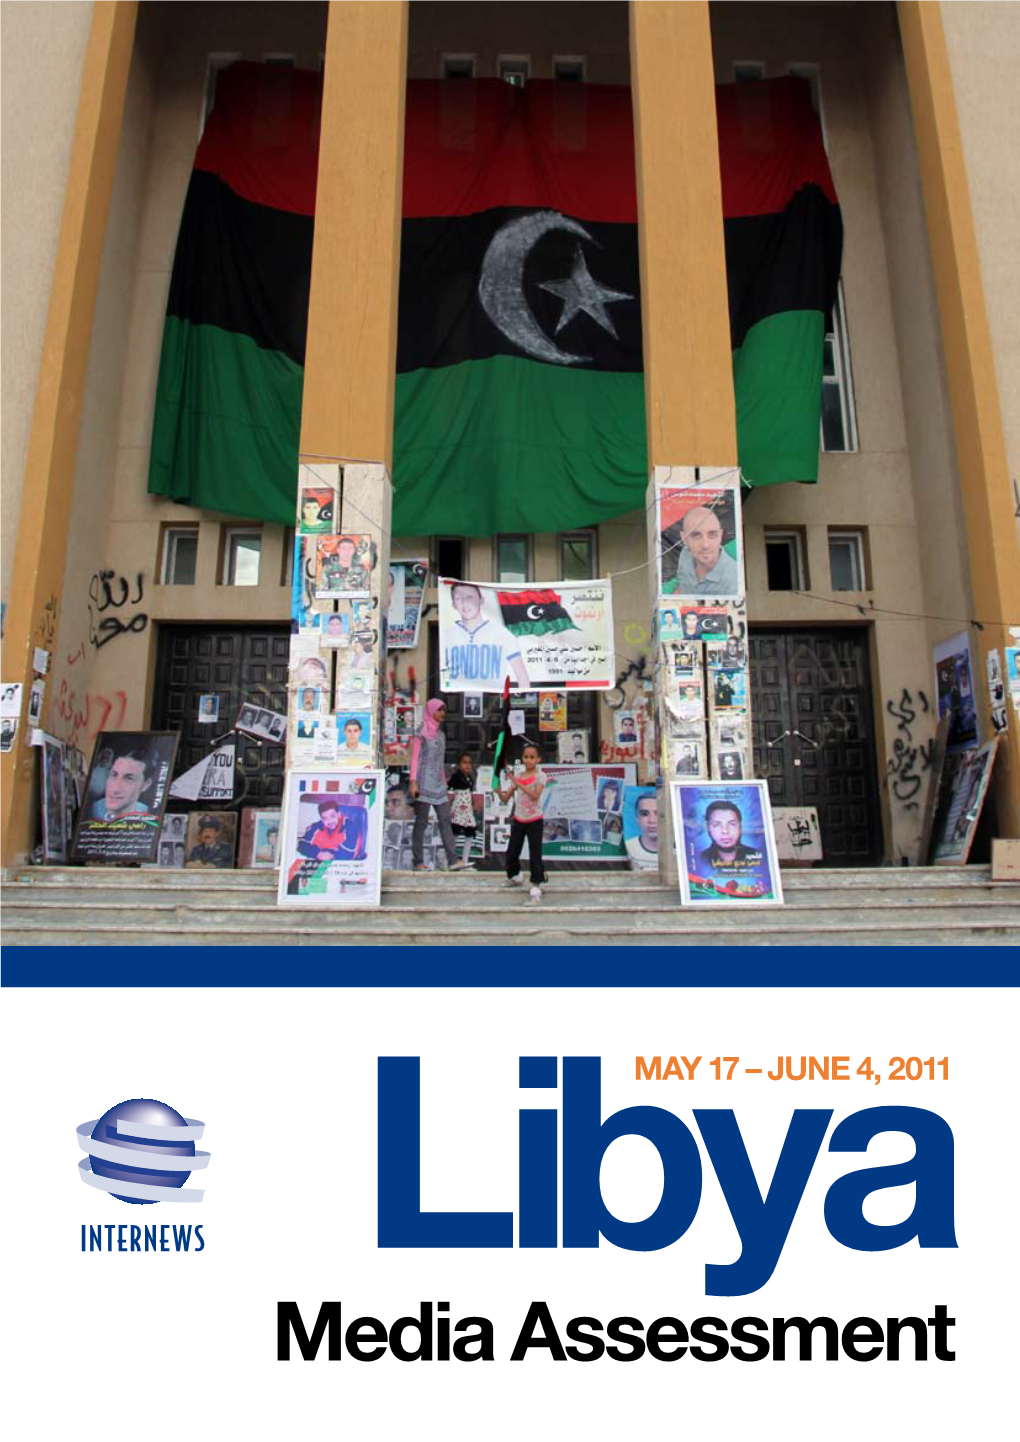 Media Assessment Internews Libya Media Assessment 2 May 17-June 7 2011